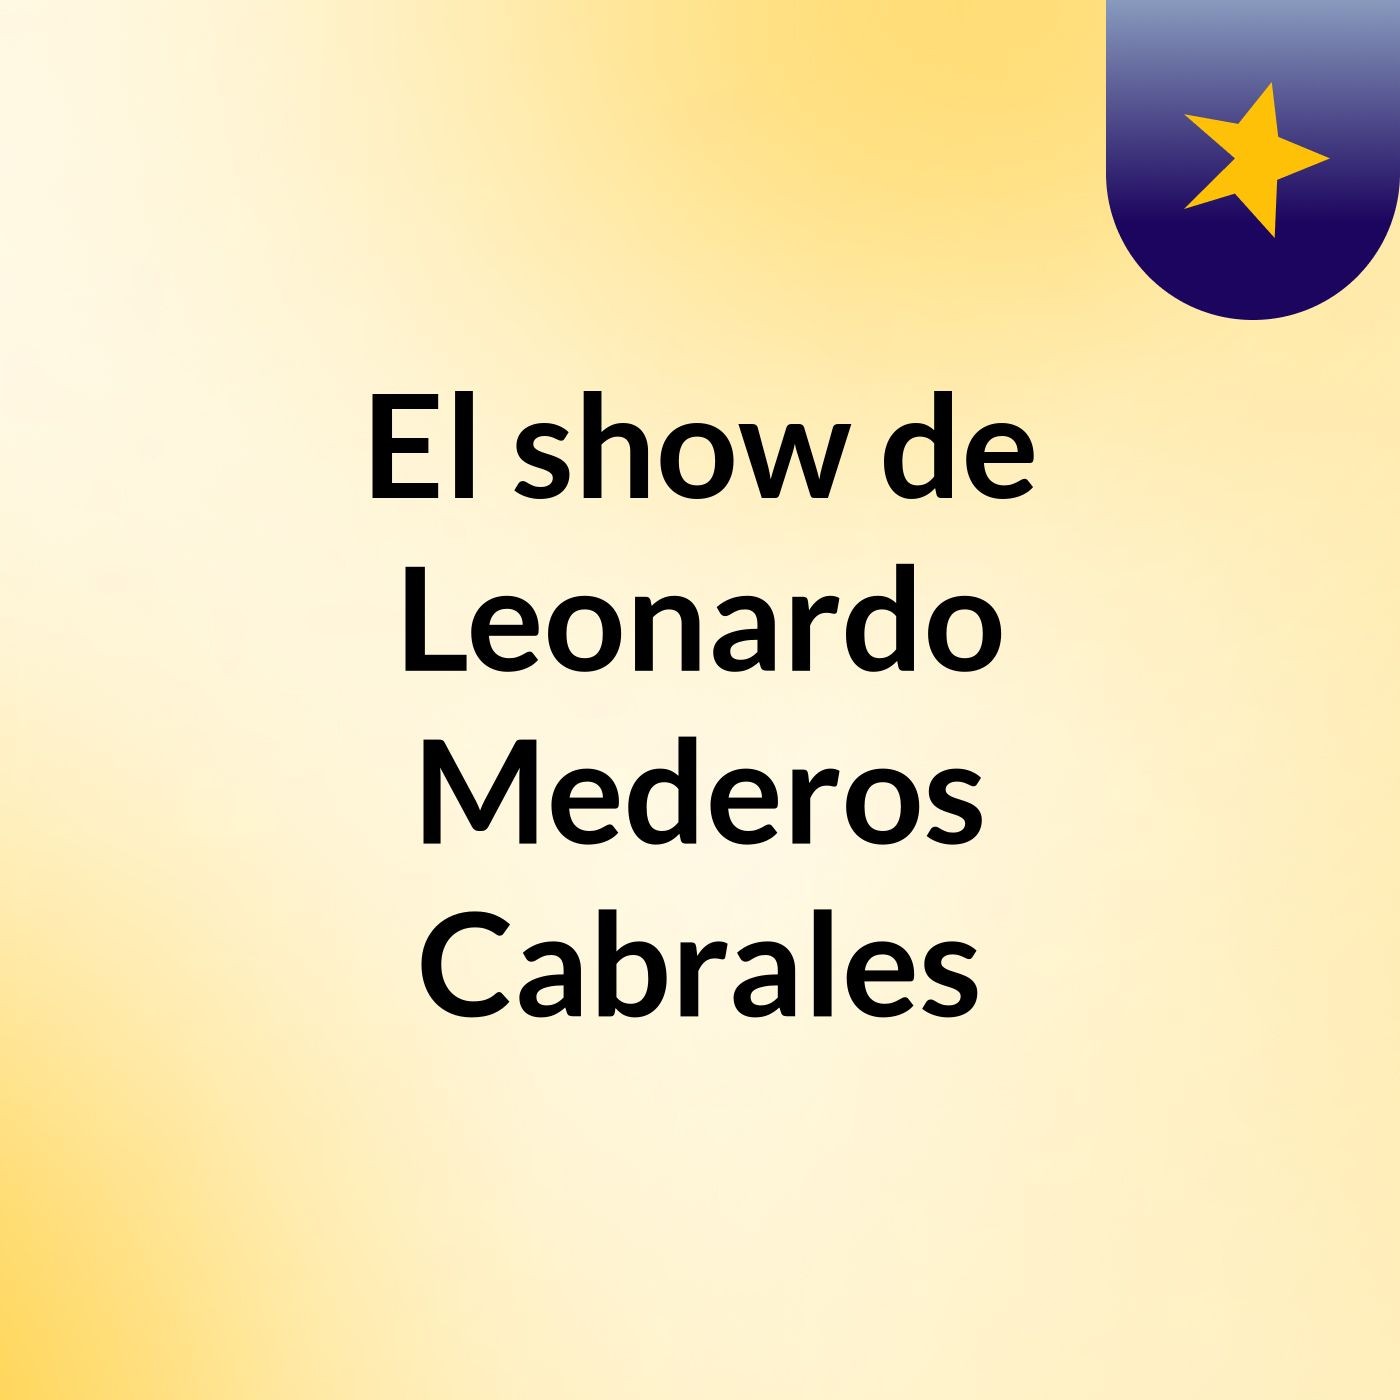 El show de Leonardo Mederos Cabrales